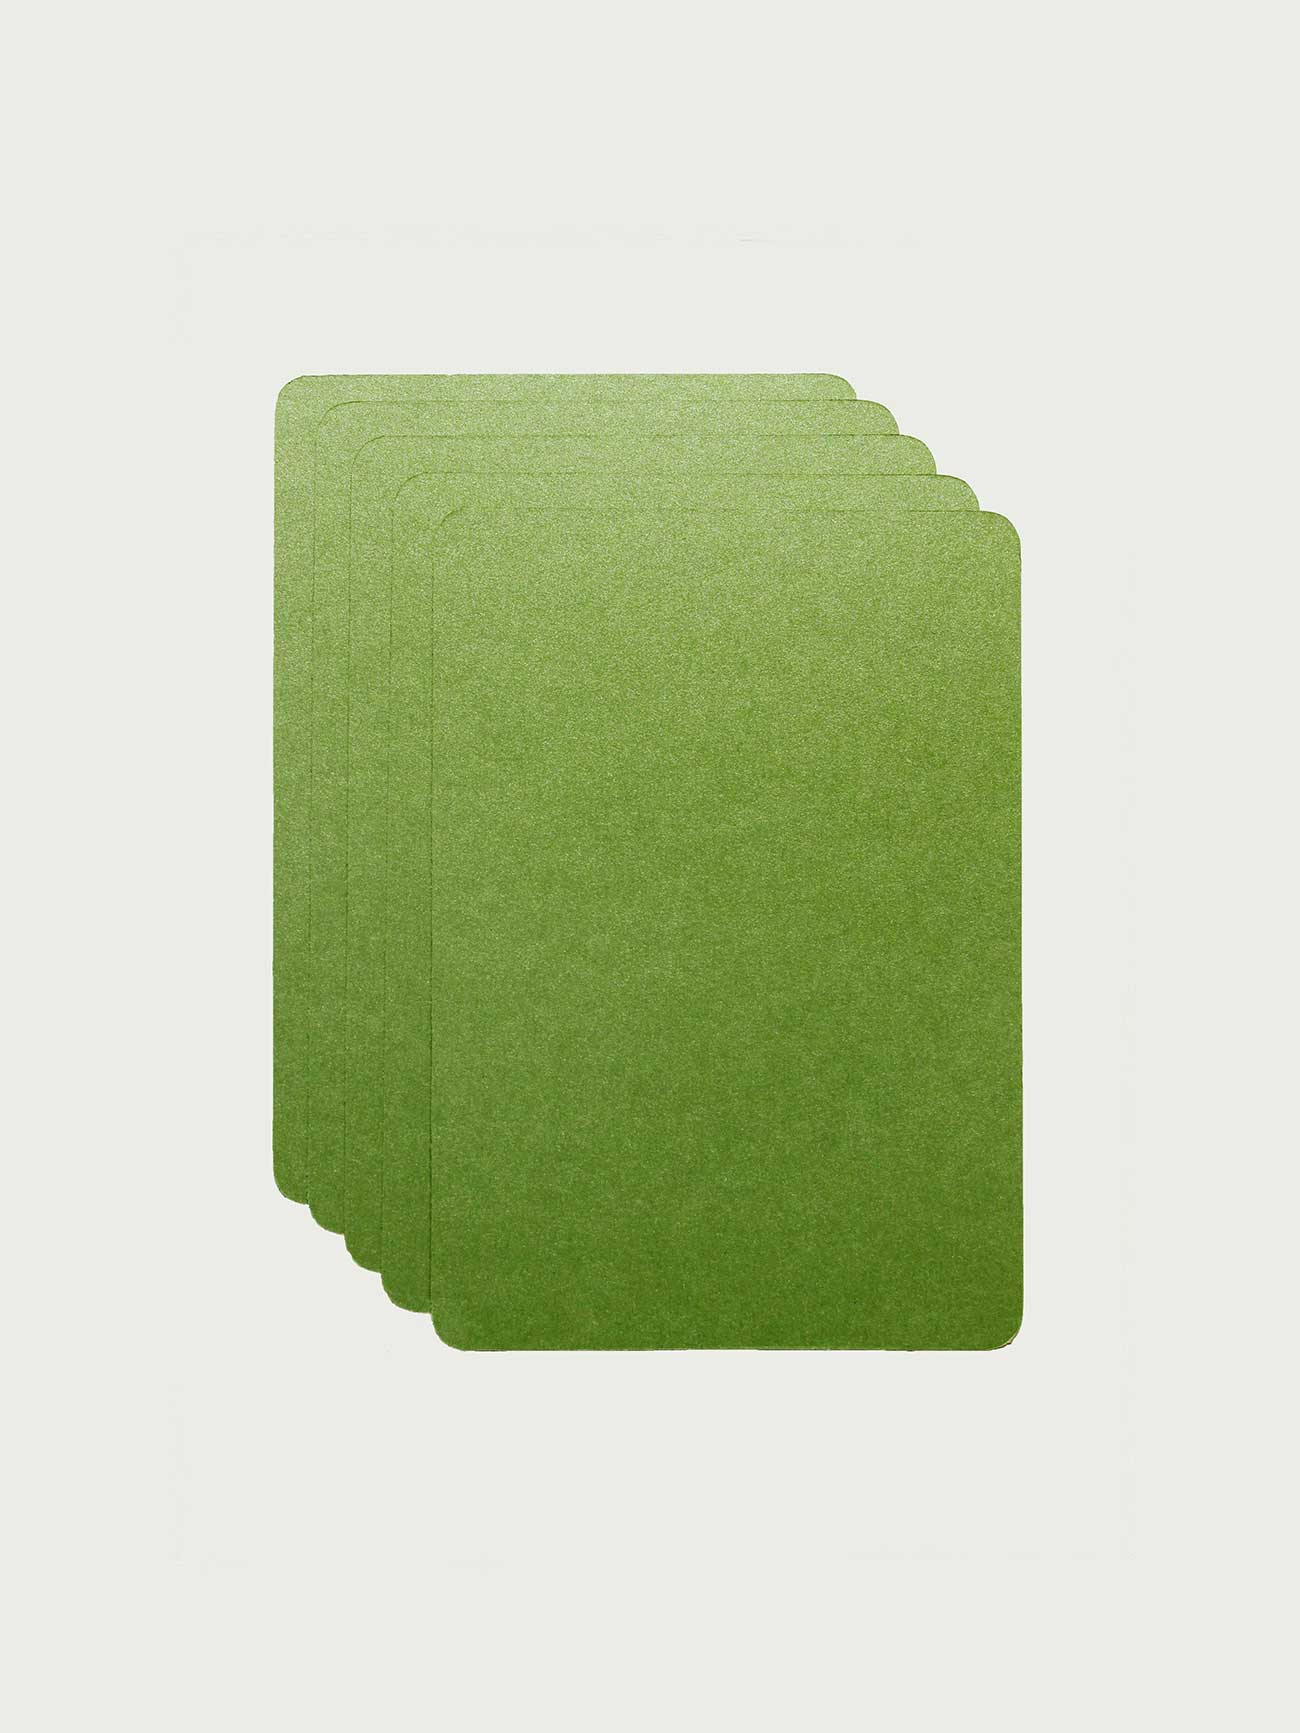 Paquet de 5 CARTES A6 - couleur herbe